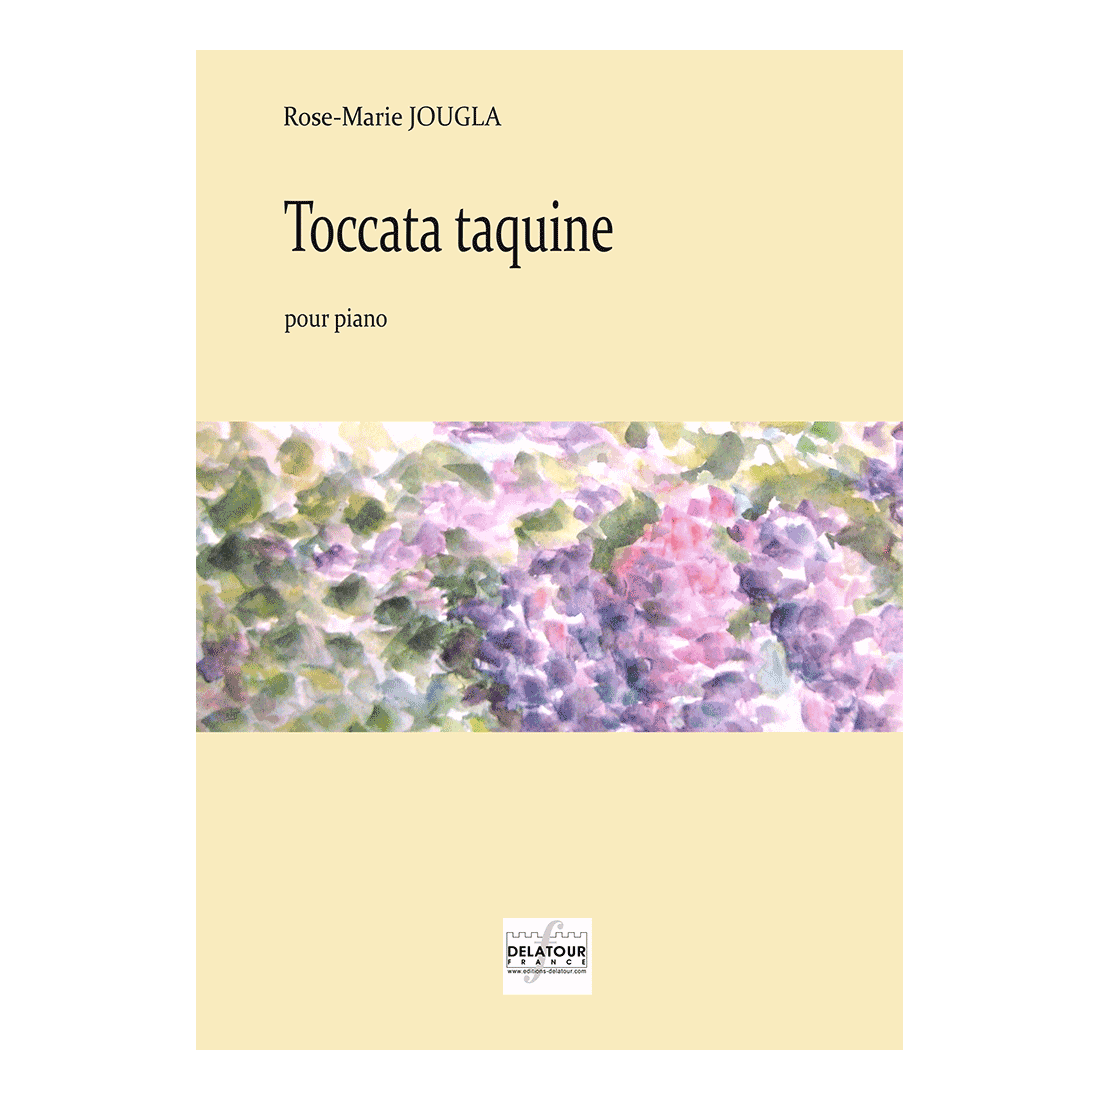 Toccata taquine pour piano